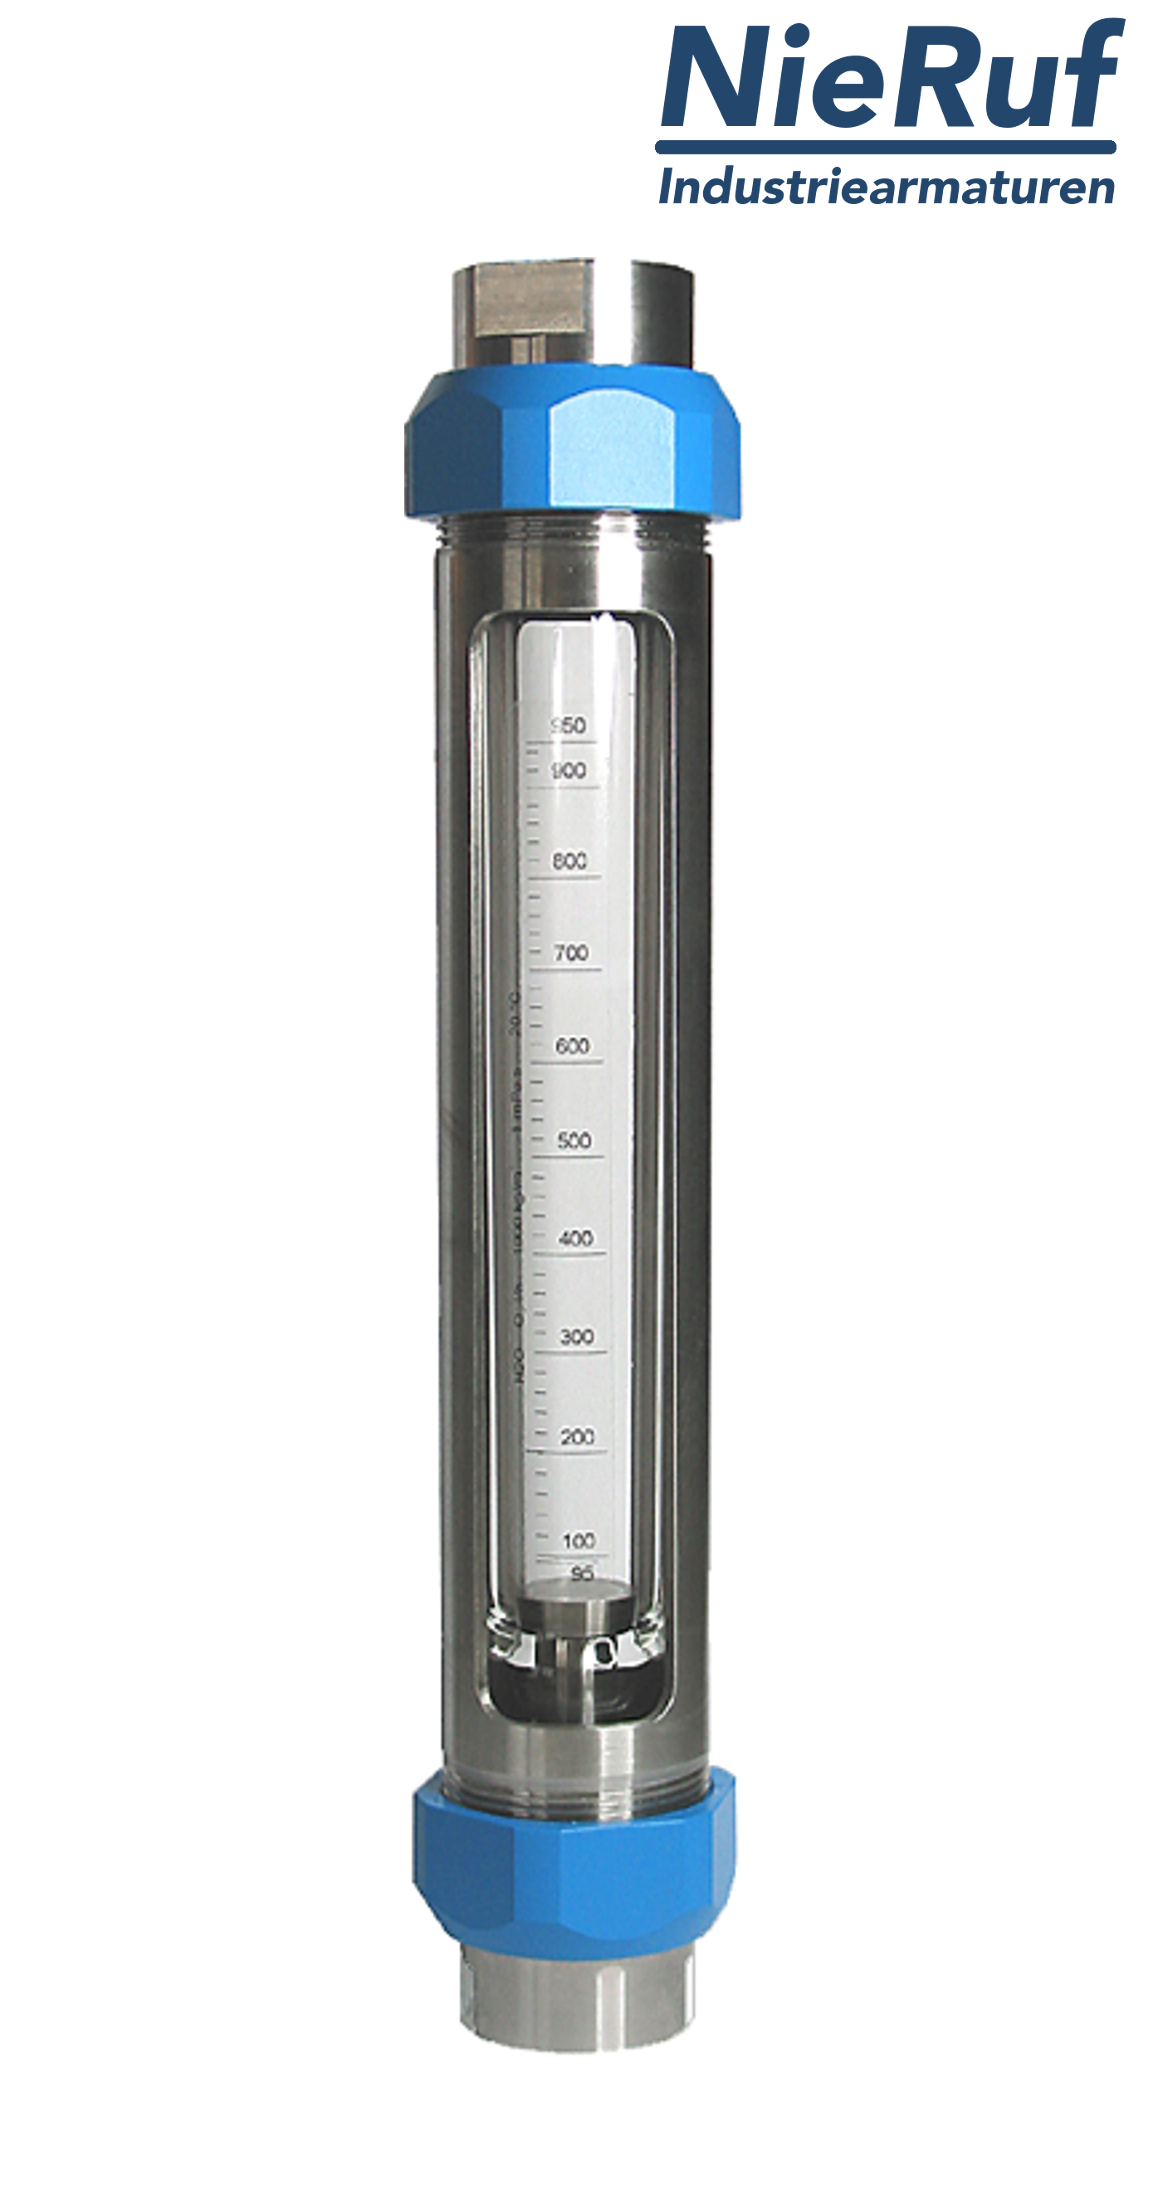 débitmètre à flotteur en acier inoxydable 3/4" pouce 100,0 - 1000 l/h eau FKM